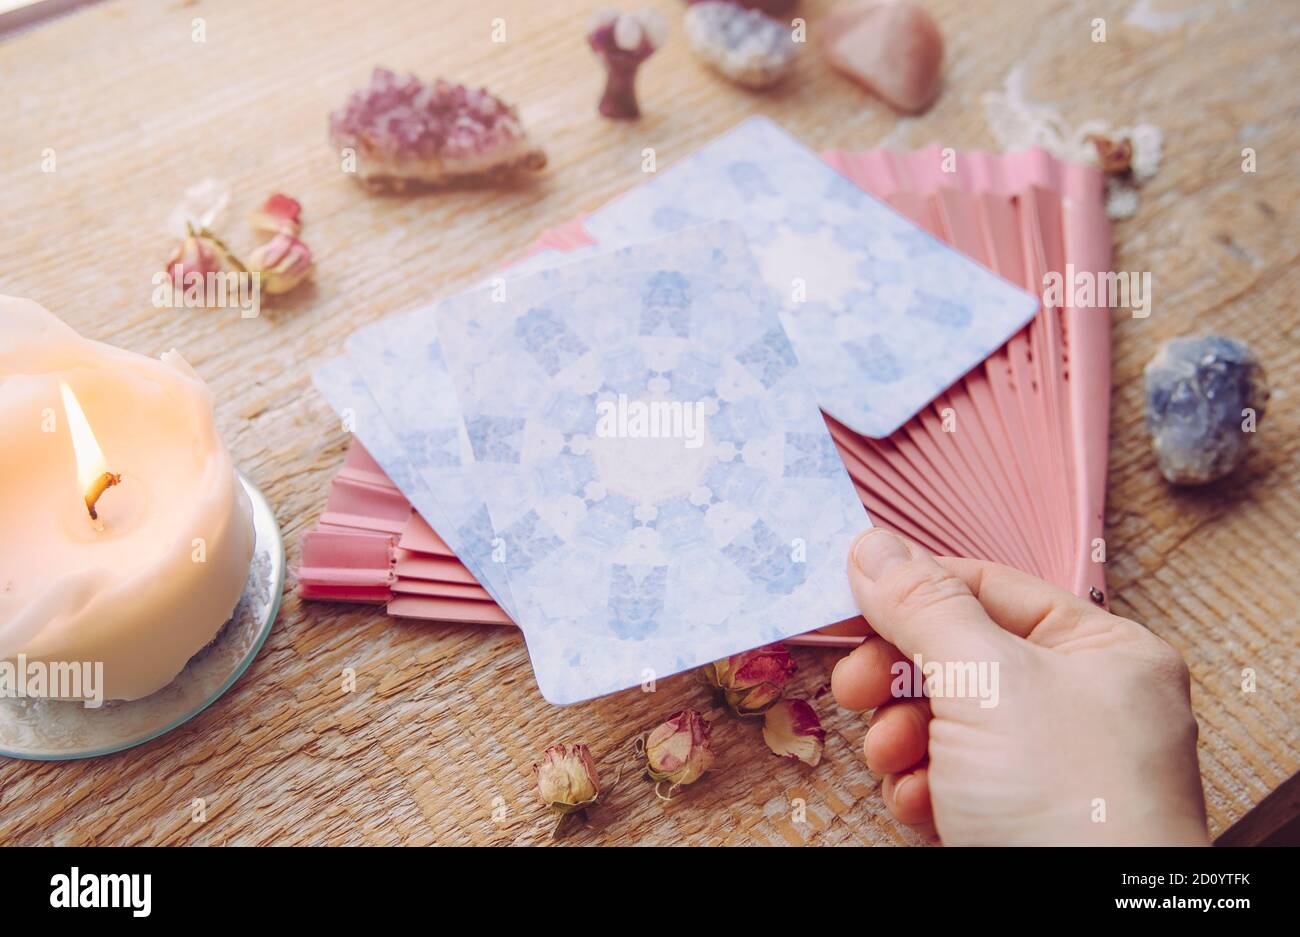 Ponte con divinazione carte Angelo fatte in casa su tavolo di legno, circondato da pietre semi-preziose cristalli e candele. Persona che sceglie una carta. Foto Stock